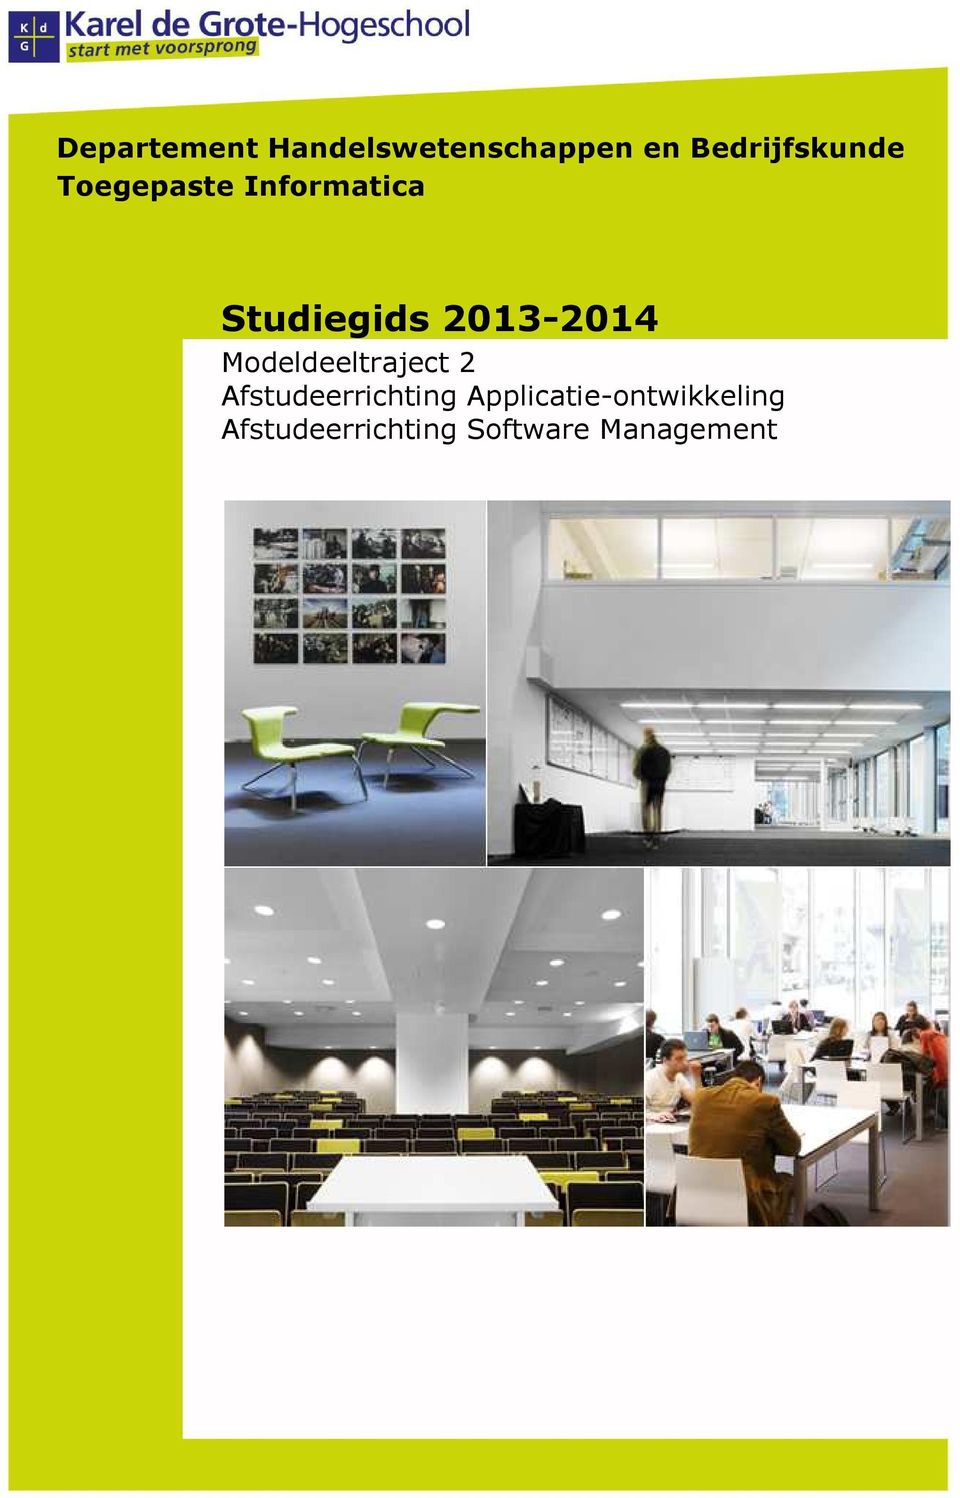 2013-2014 Modeldeeltraject 2 Afstudeerrichting